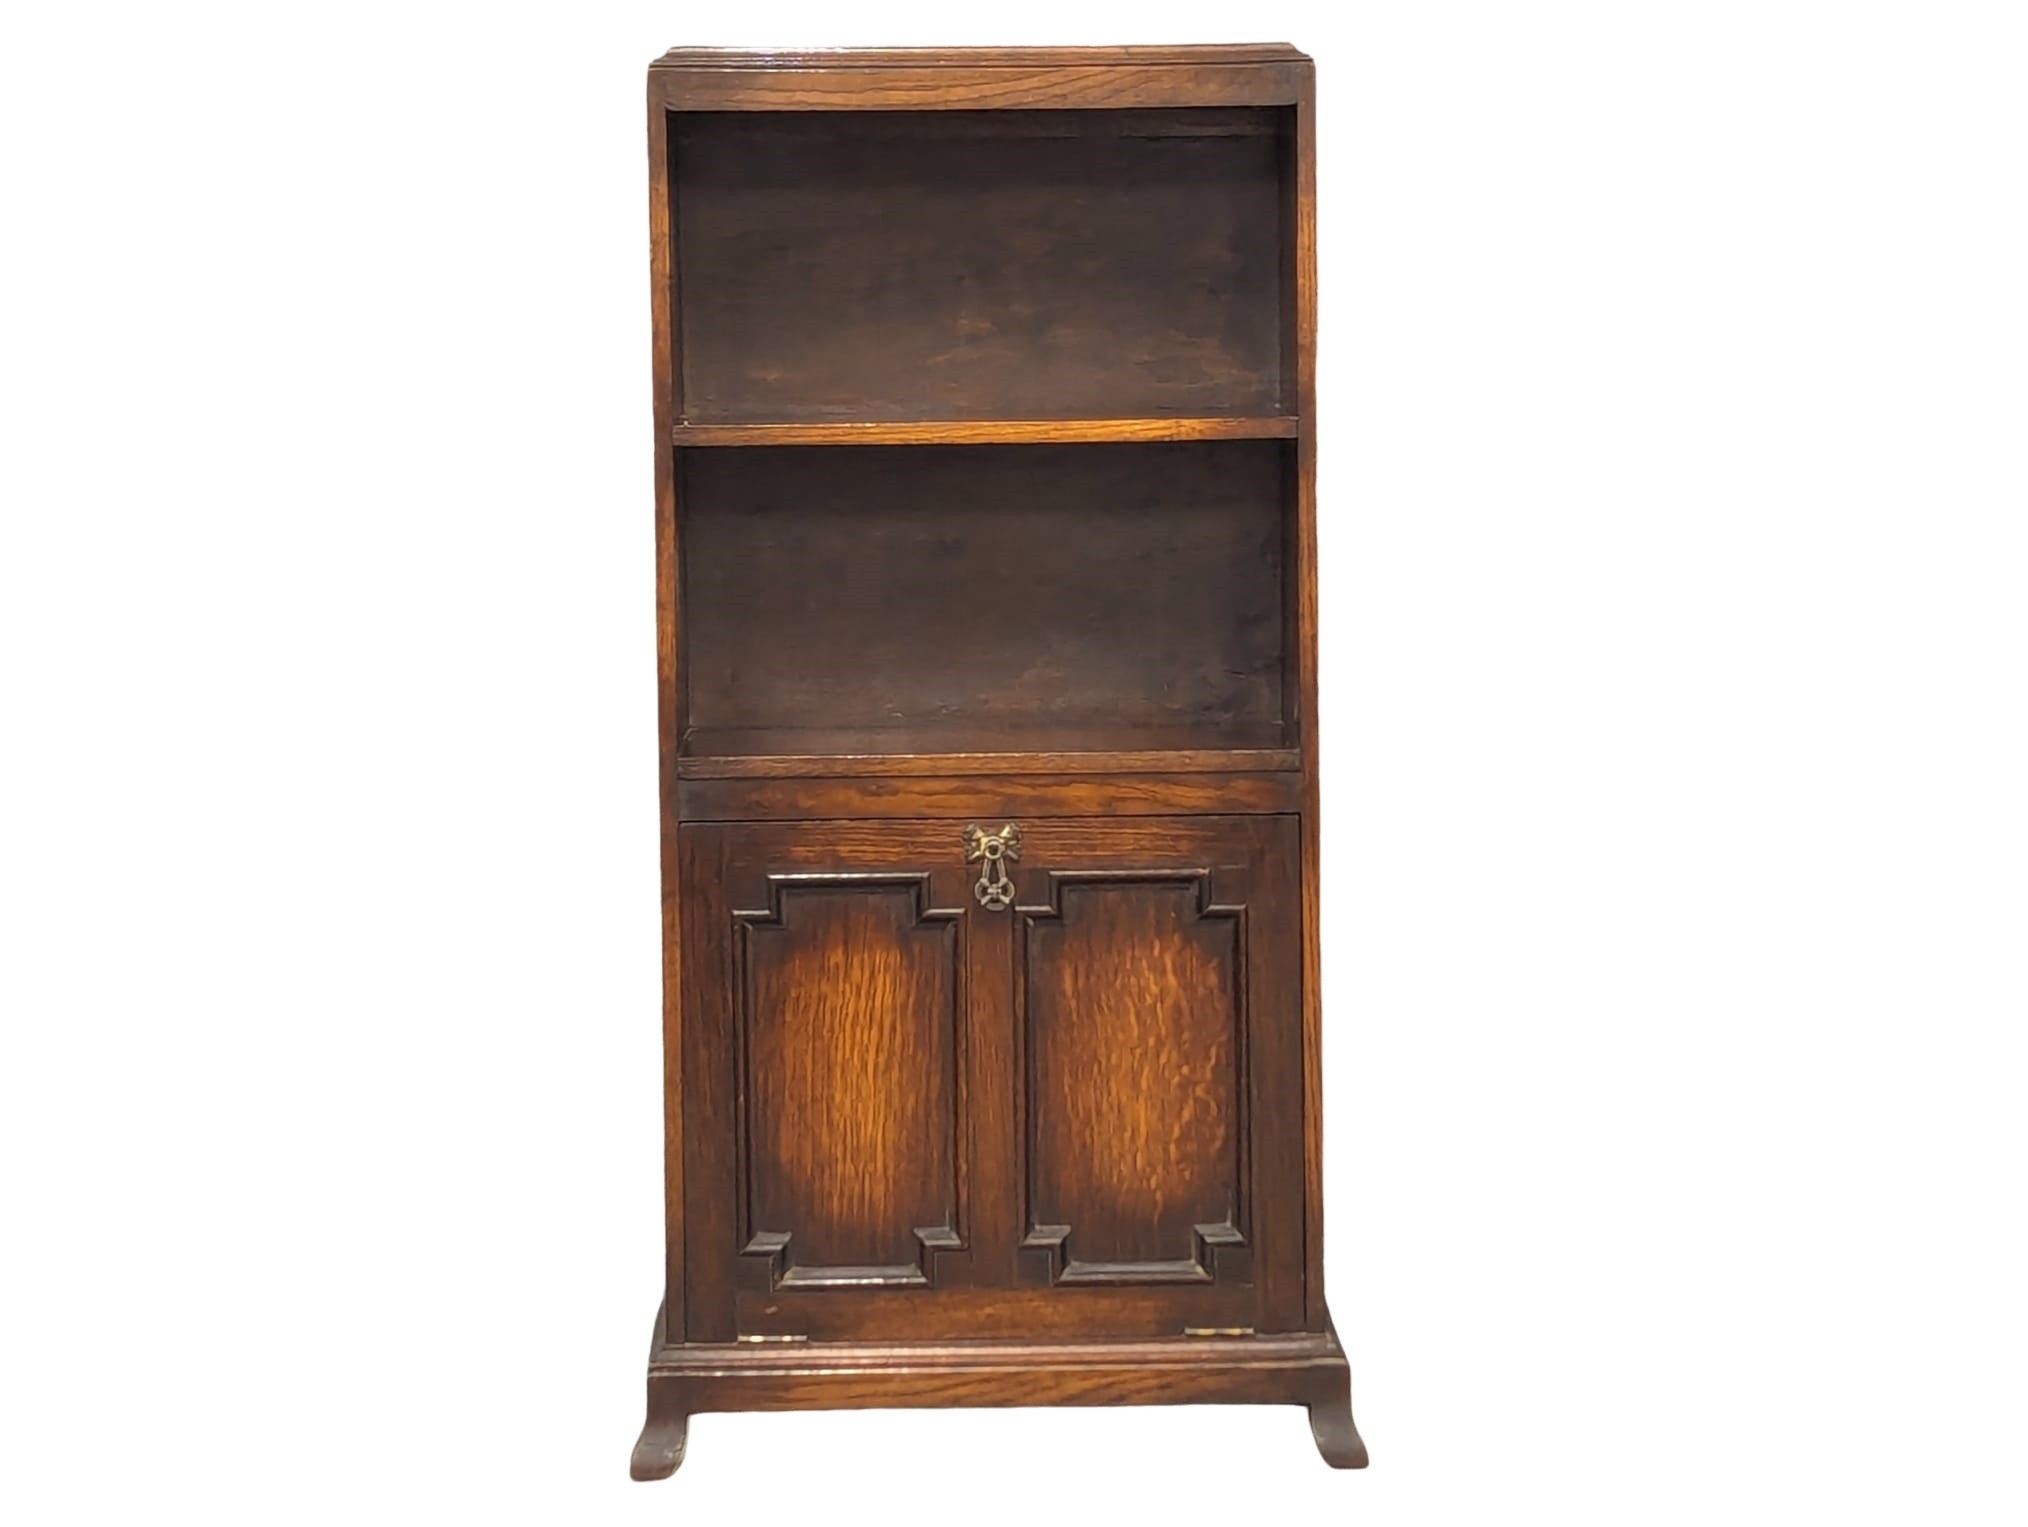 A vintage oak open bookcase with drop down paper rack. 48.5x22.5x105cm